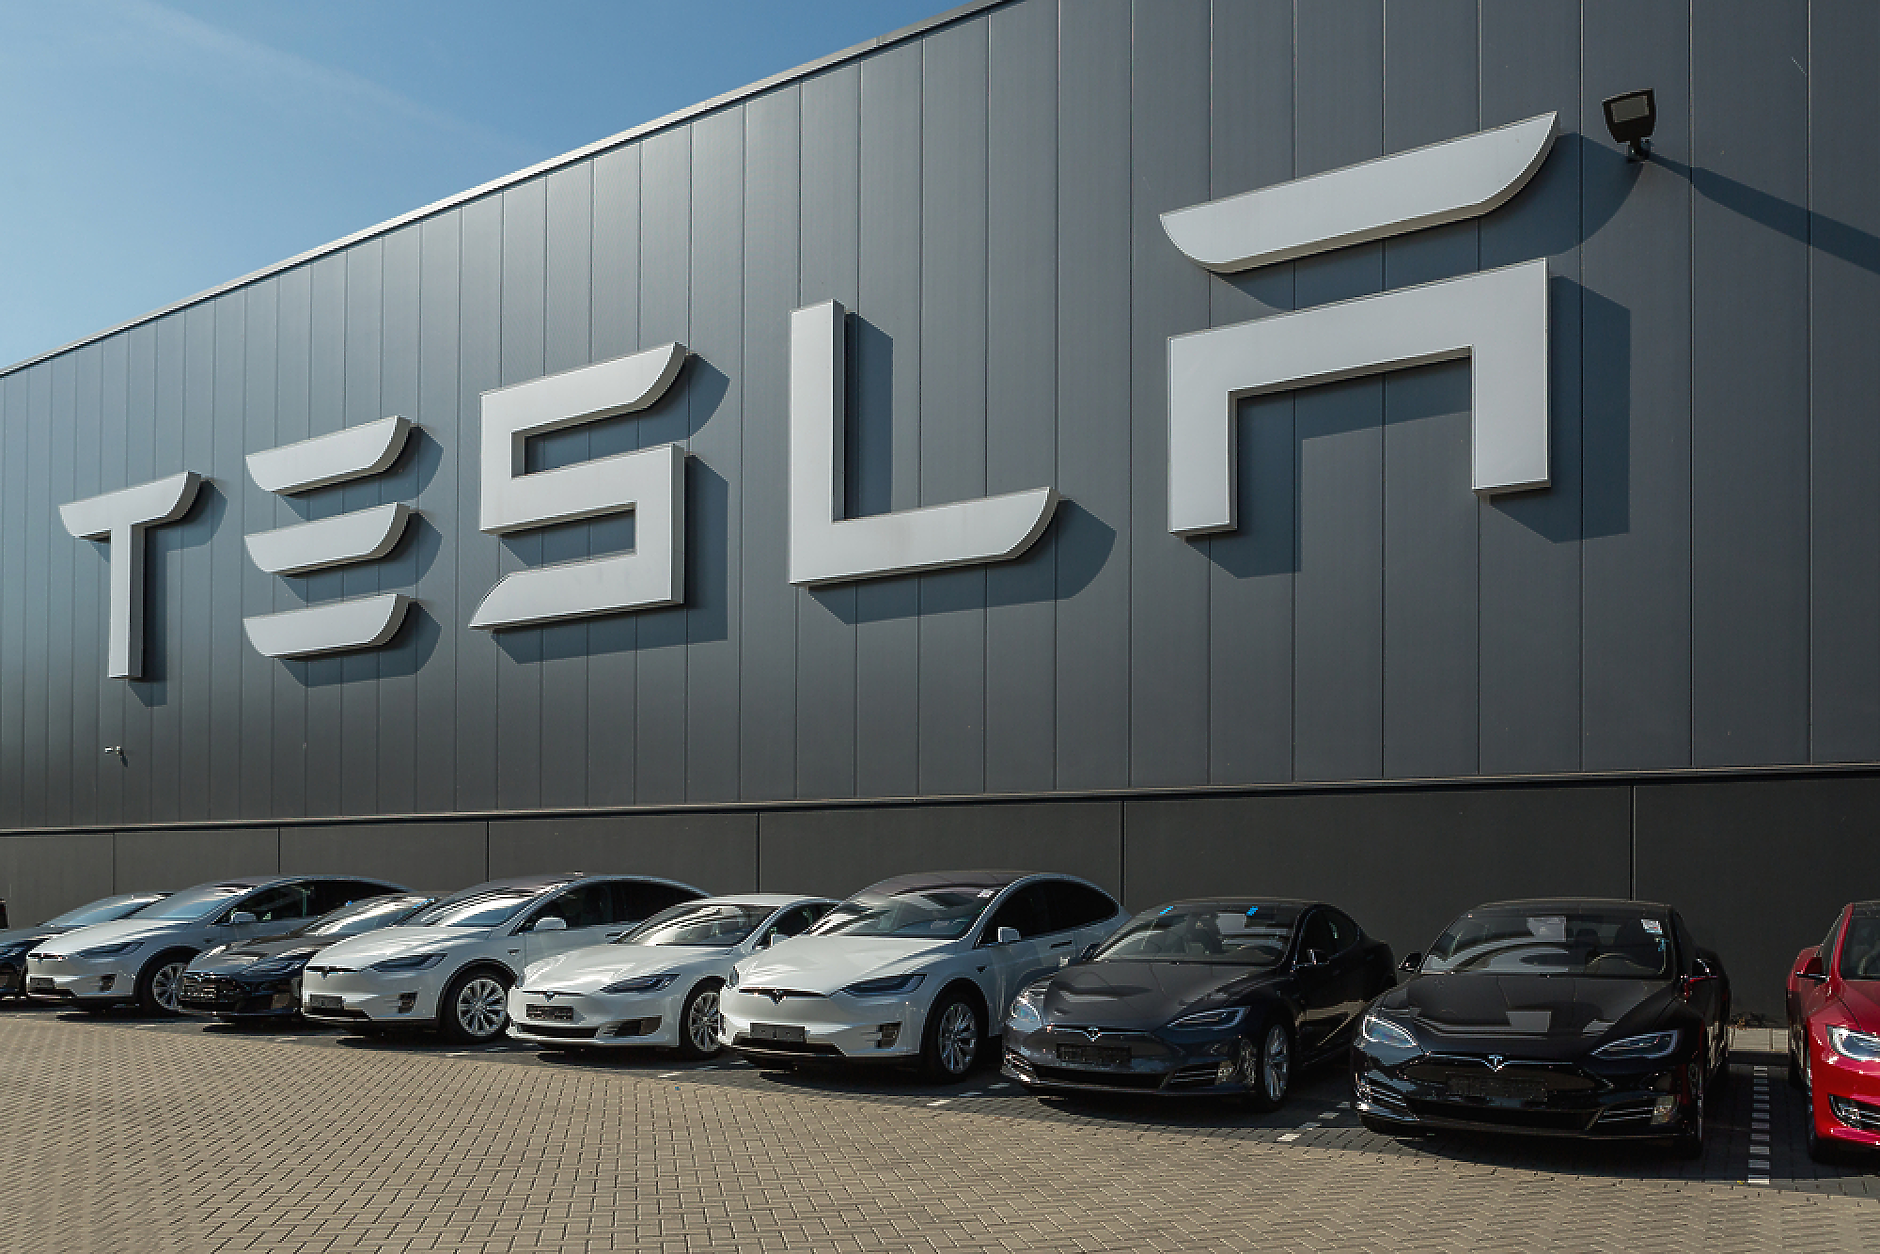 Tesla изтегля над 120 000 електромобила в САЩ заради отключващи се врати при катастрофа